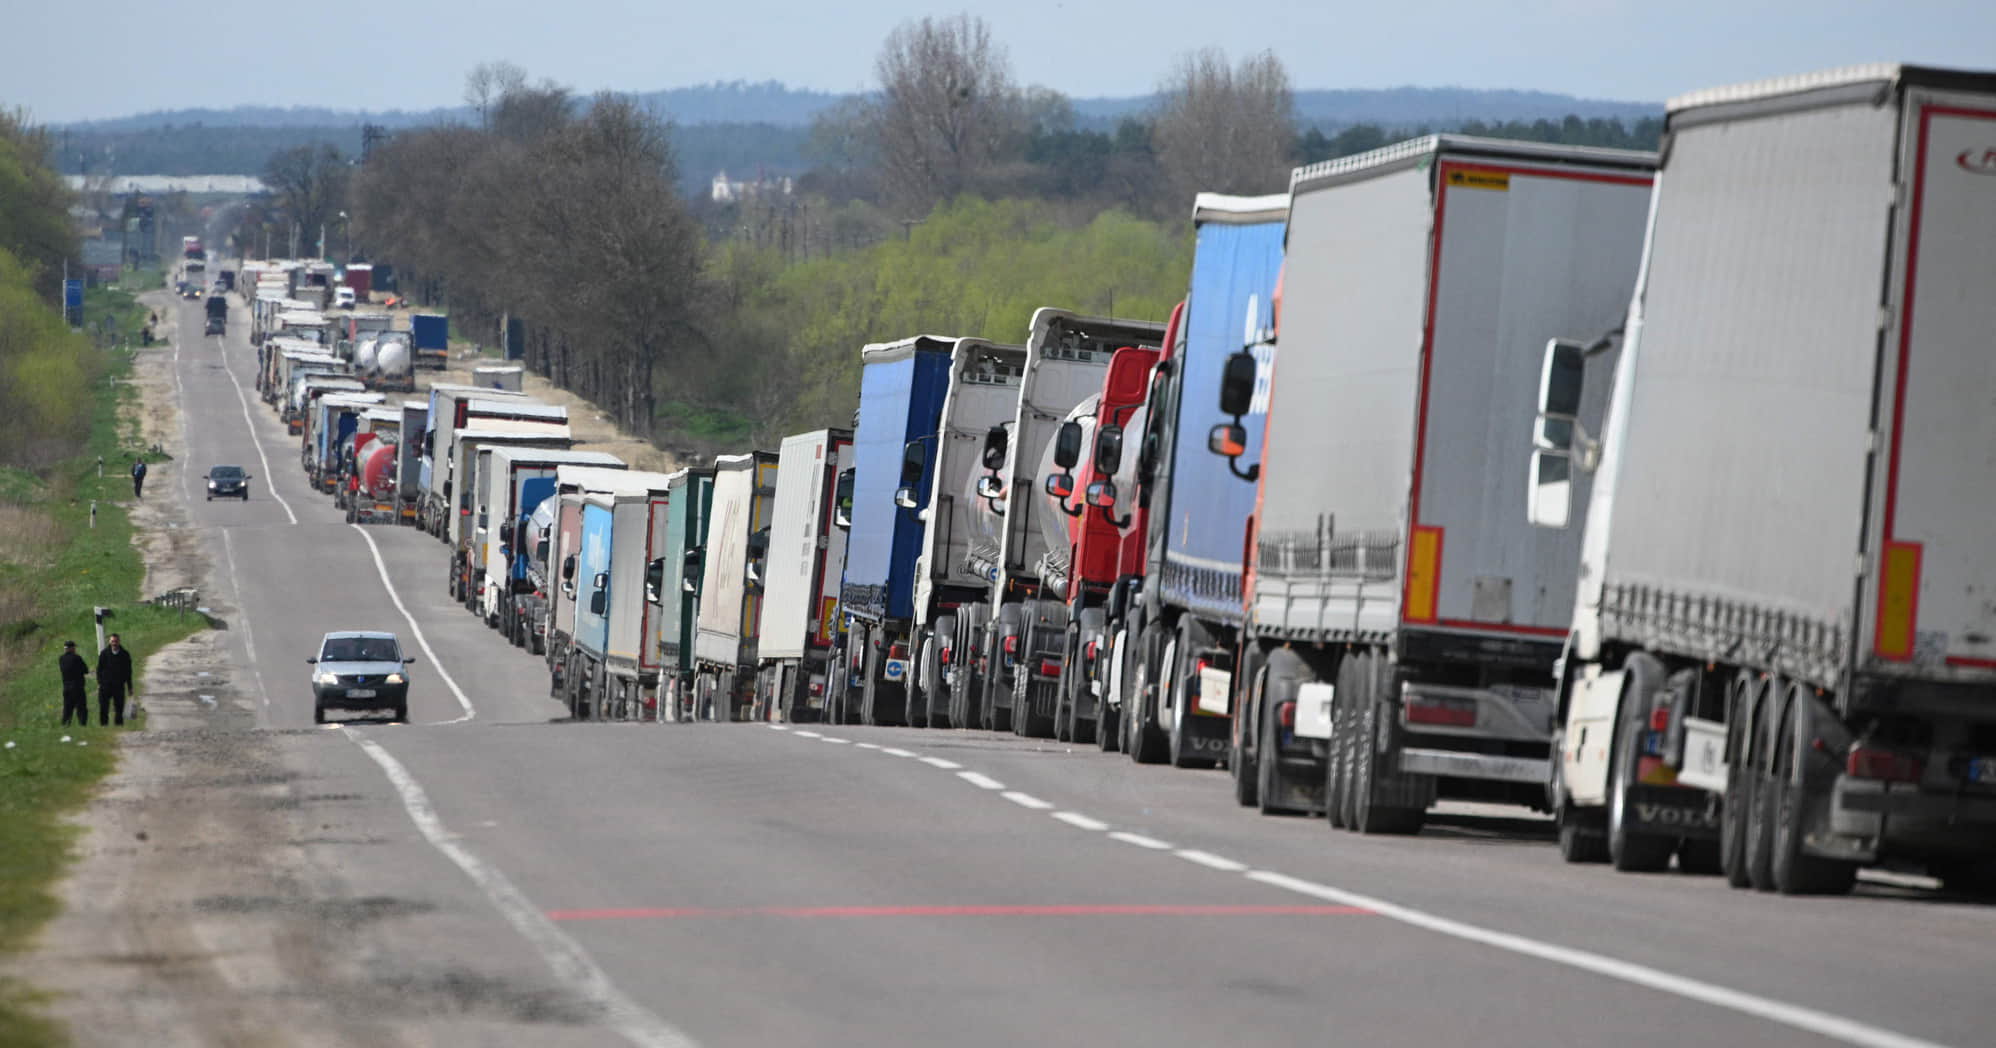 єЧерга: в Україні відкрили дані про міжнародні вантажні перевезення